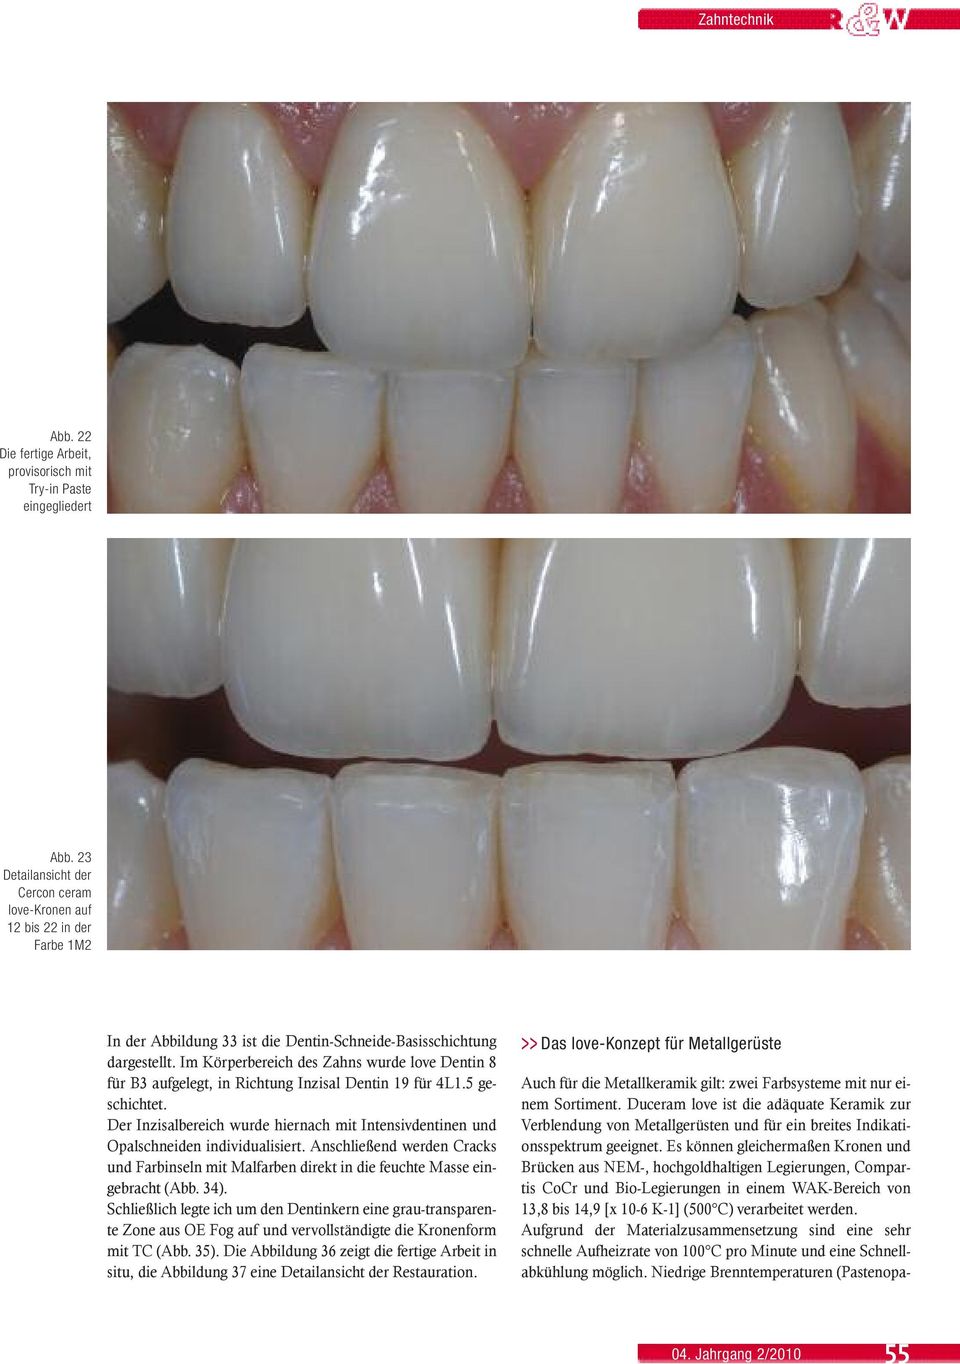 Im Körperbereich des Zahns wurde love Dentin 8 für B3 aufgelegt, in Richtung Inzisal Dentin 19 für 4L1.5 geschichtet.